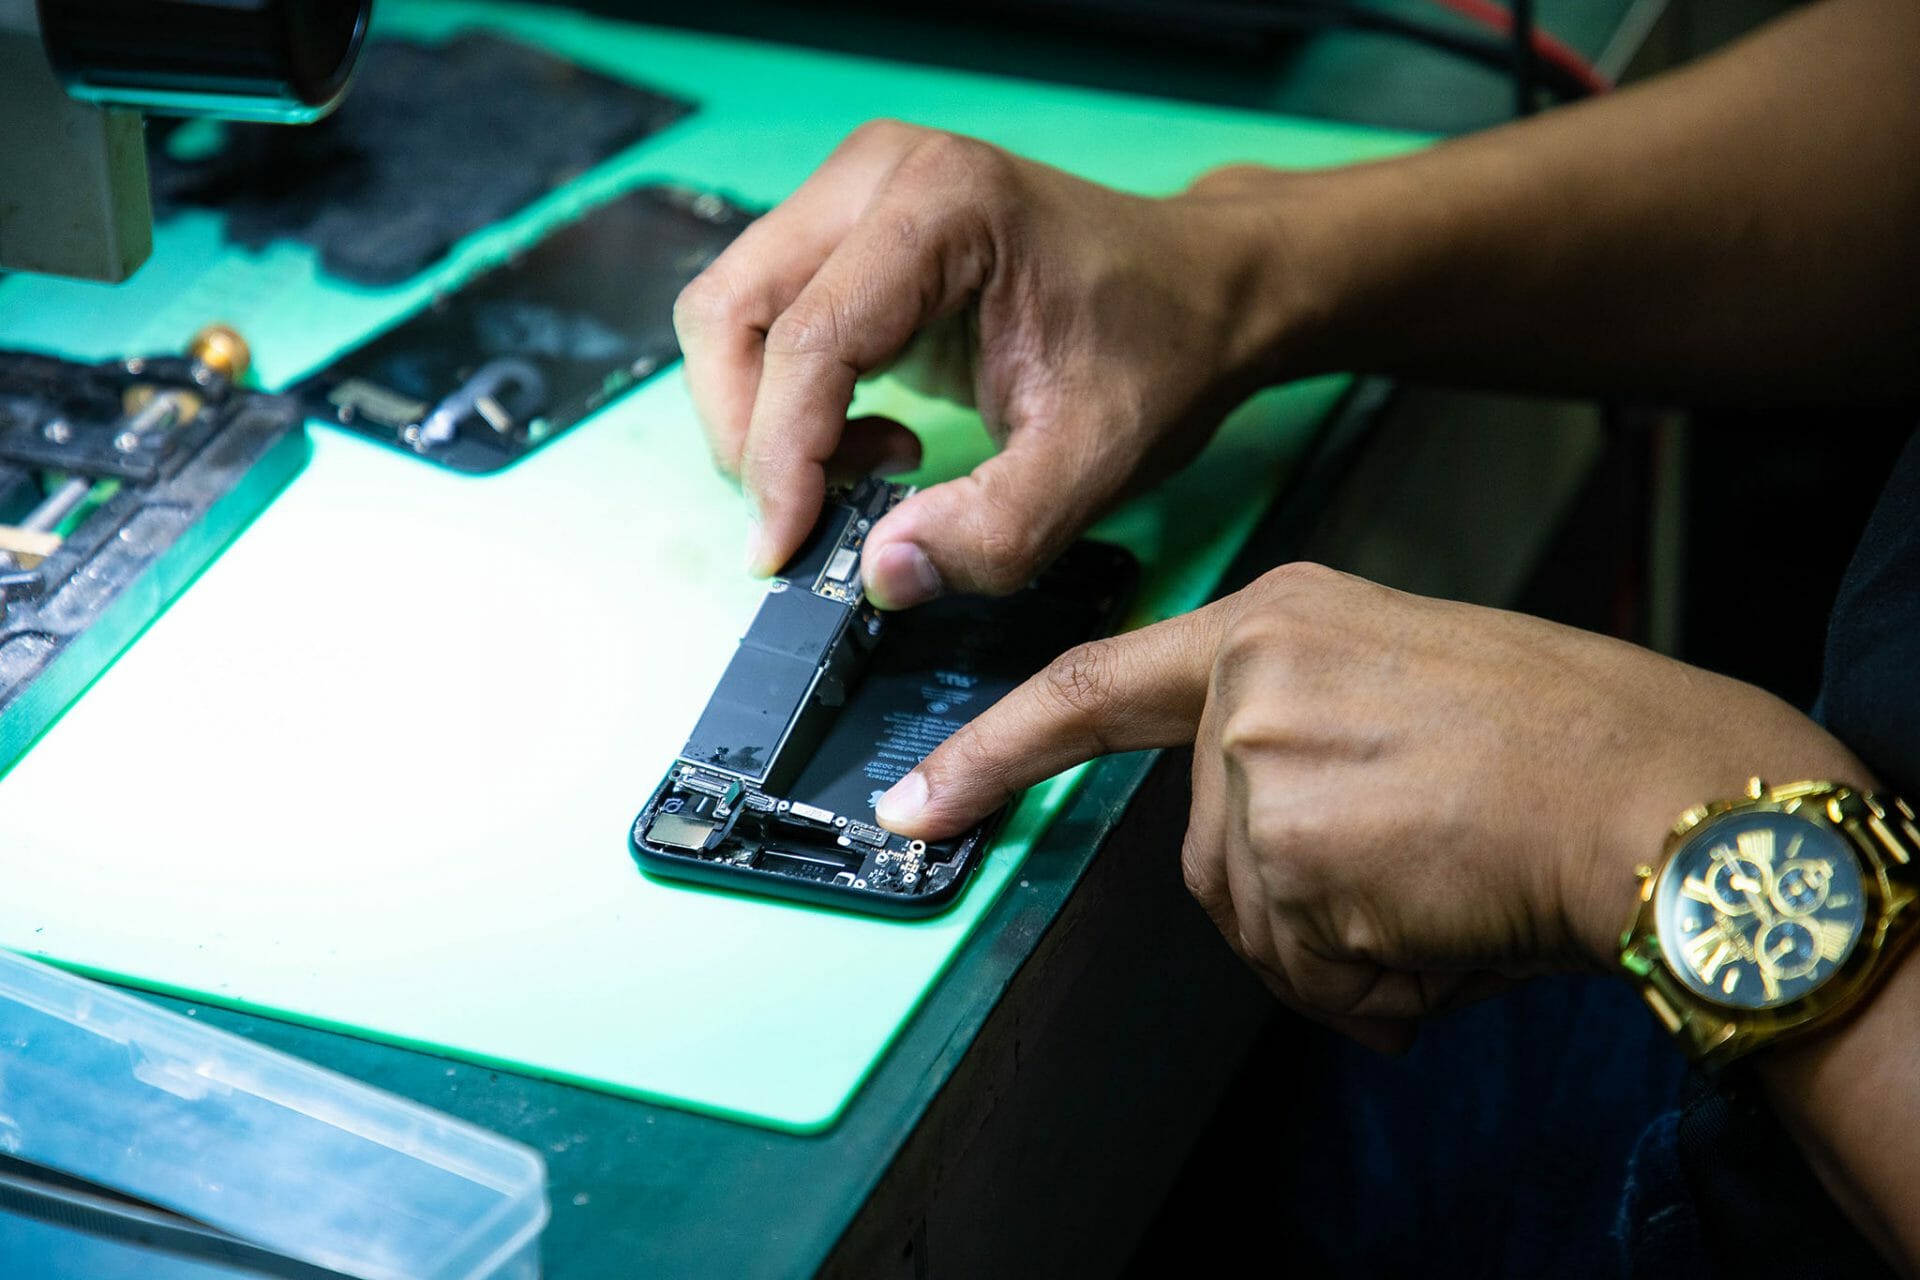 ซ่อมมือถือ แถว ตึกแกรมมี่ อโศก ร้านไหนดี มีบริการรับประกันการซ่อม 🥇 ศูนย์ซ่อม โทรศัพท์มือถือ มือถือทุกรุ่น ทุกยี่ห้อ iPhone | Apple | Samsung | Huawei